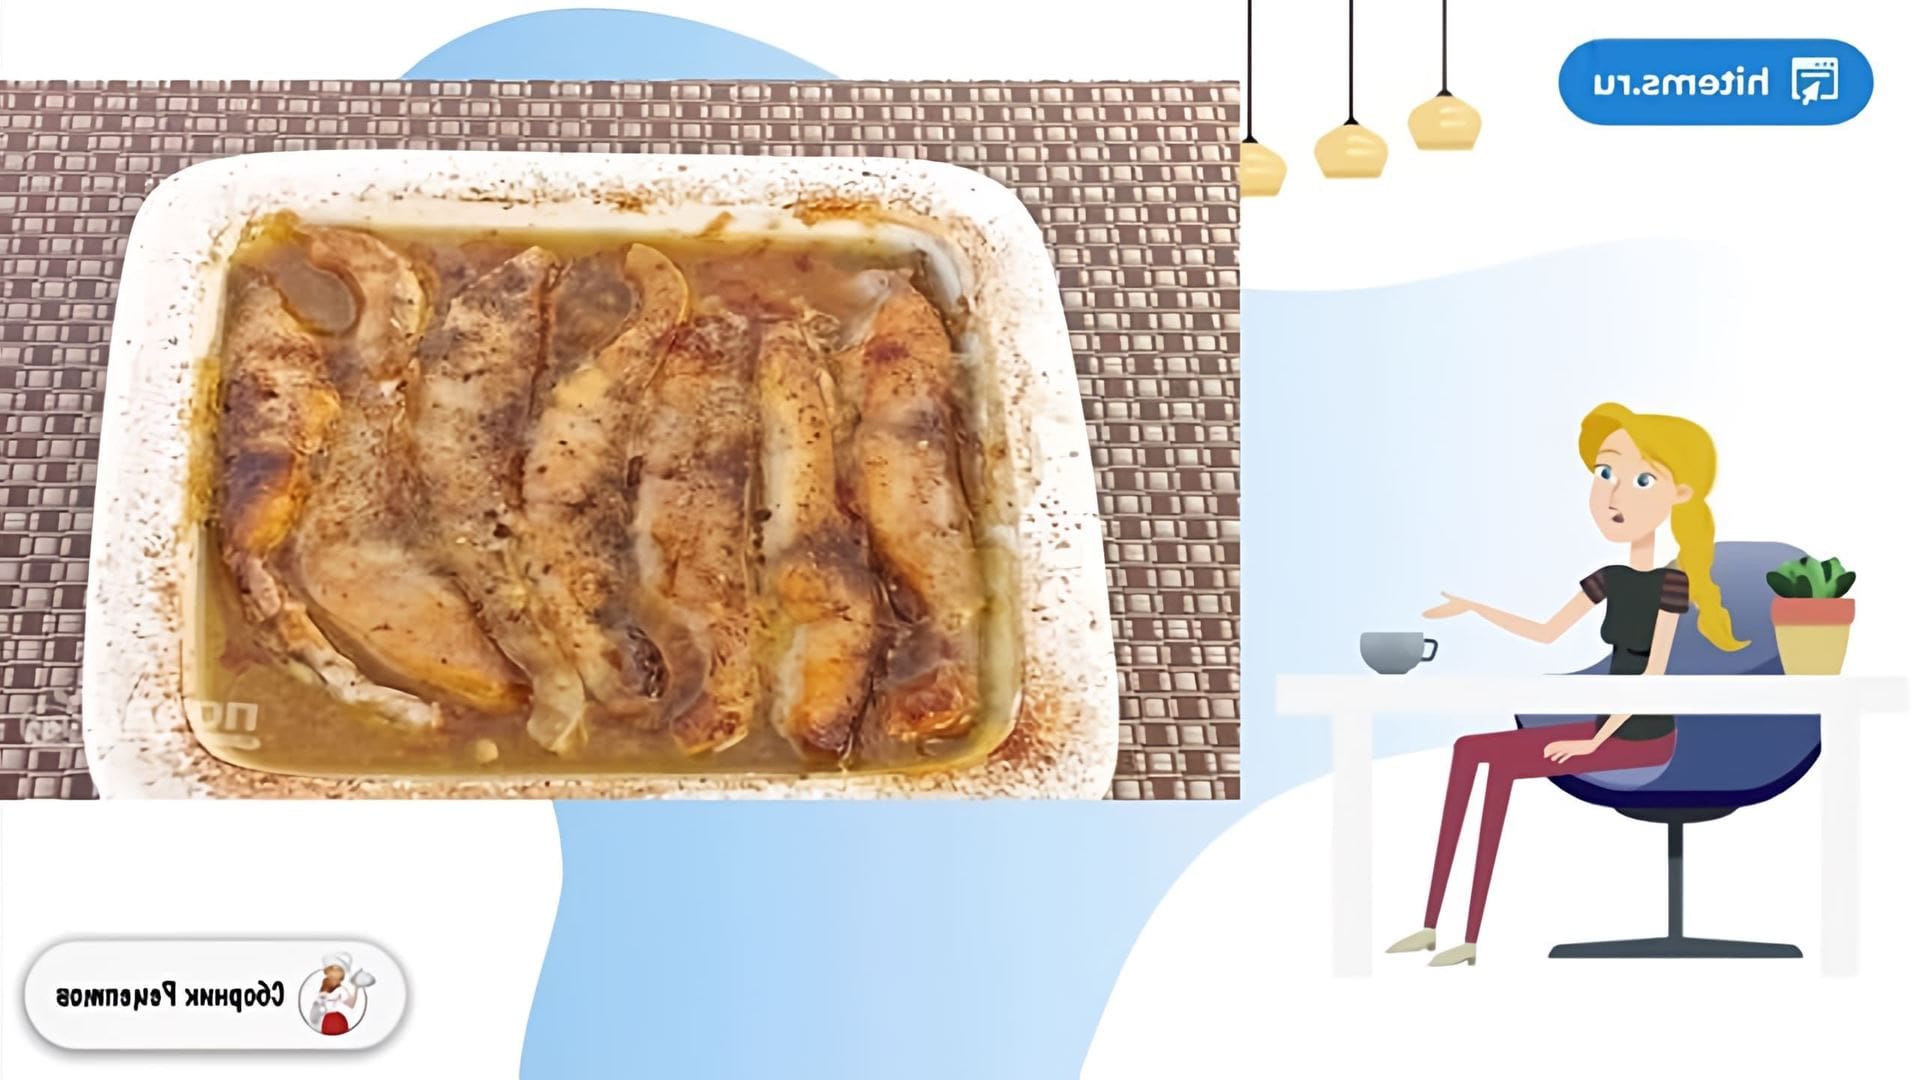 В этом видео демонстрируется рецепт приготовления сазана под маринадом